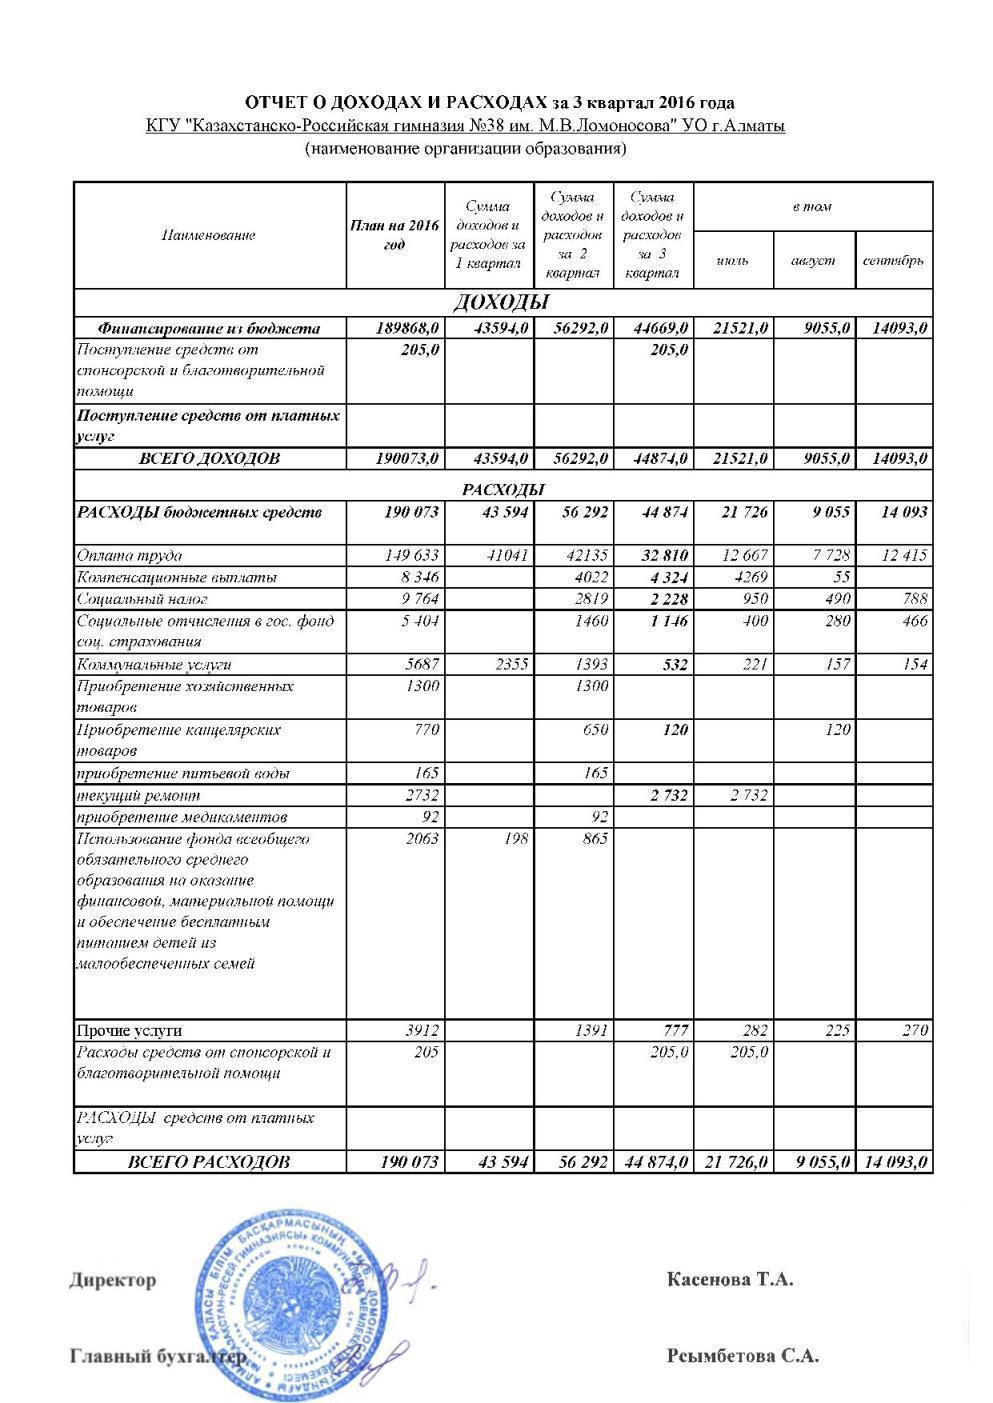 Statement of income and expenses за 3 Квартал 2016 и пояснительная записка